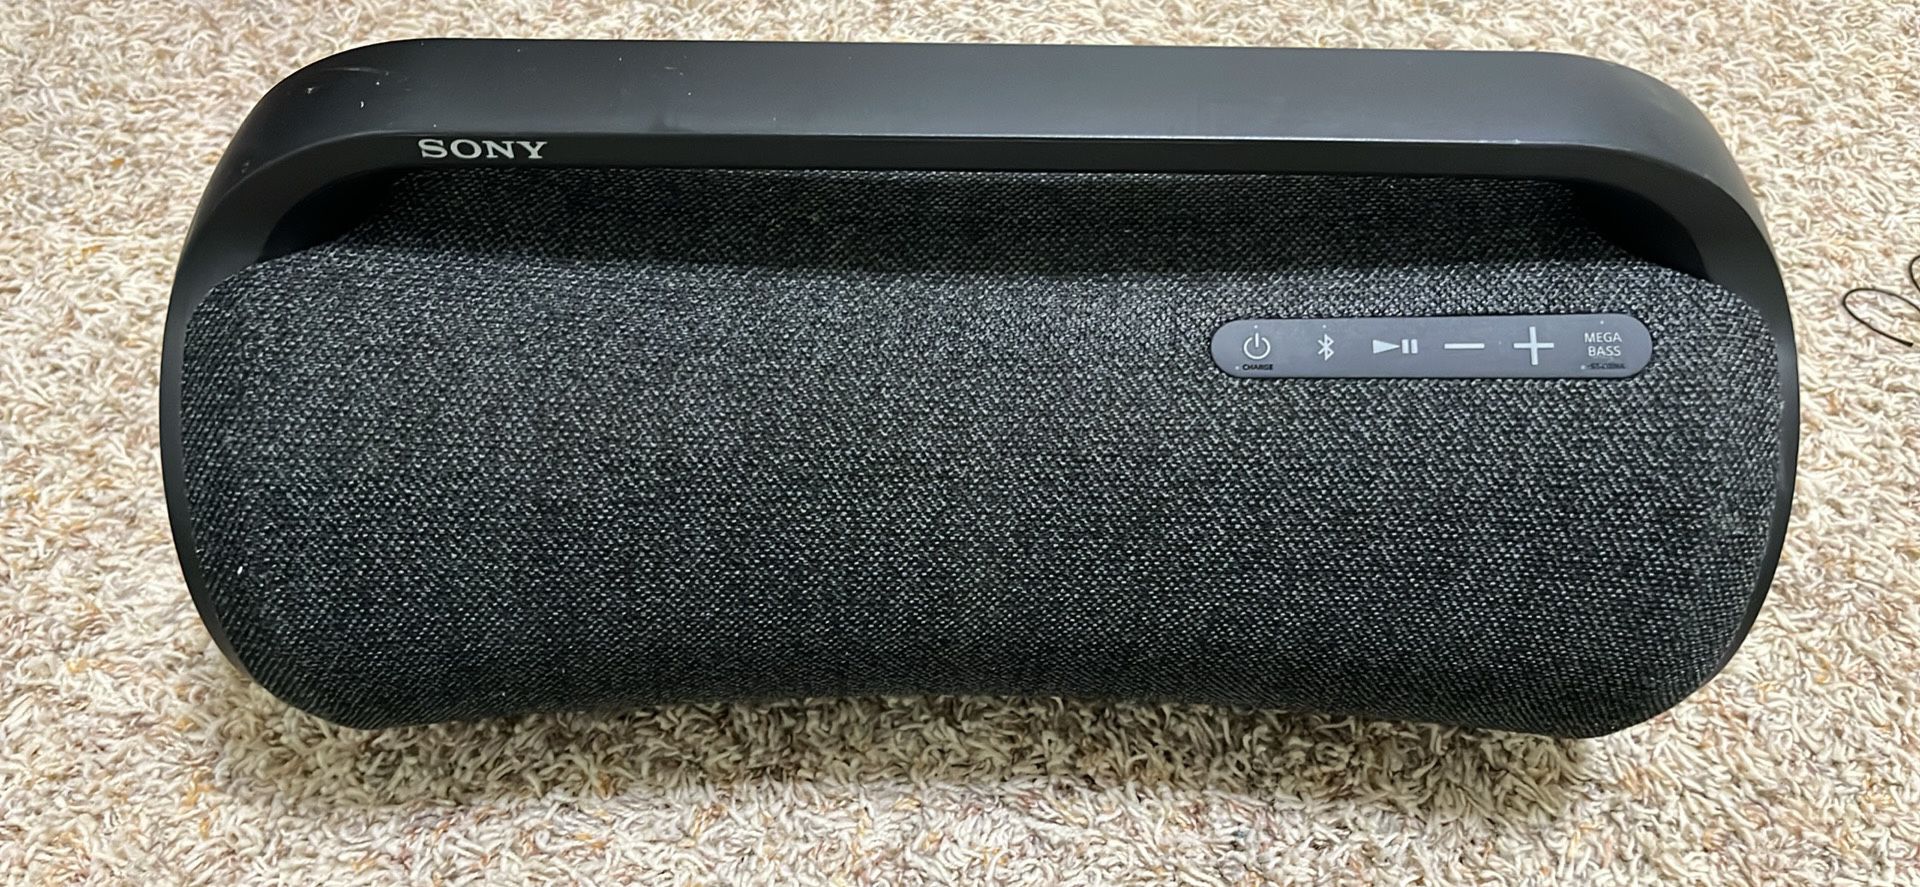 Sony Speaker Xg500